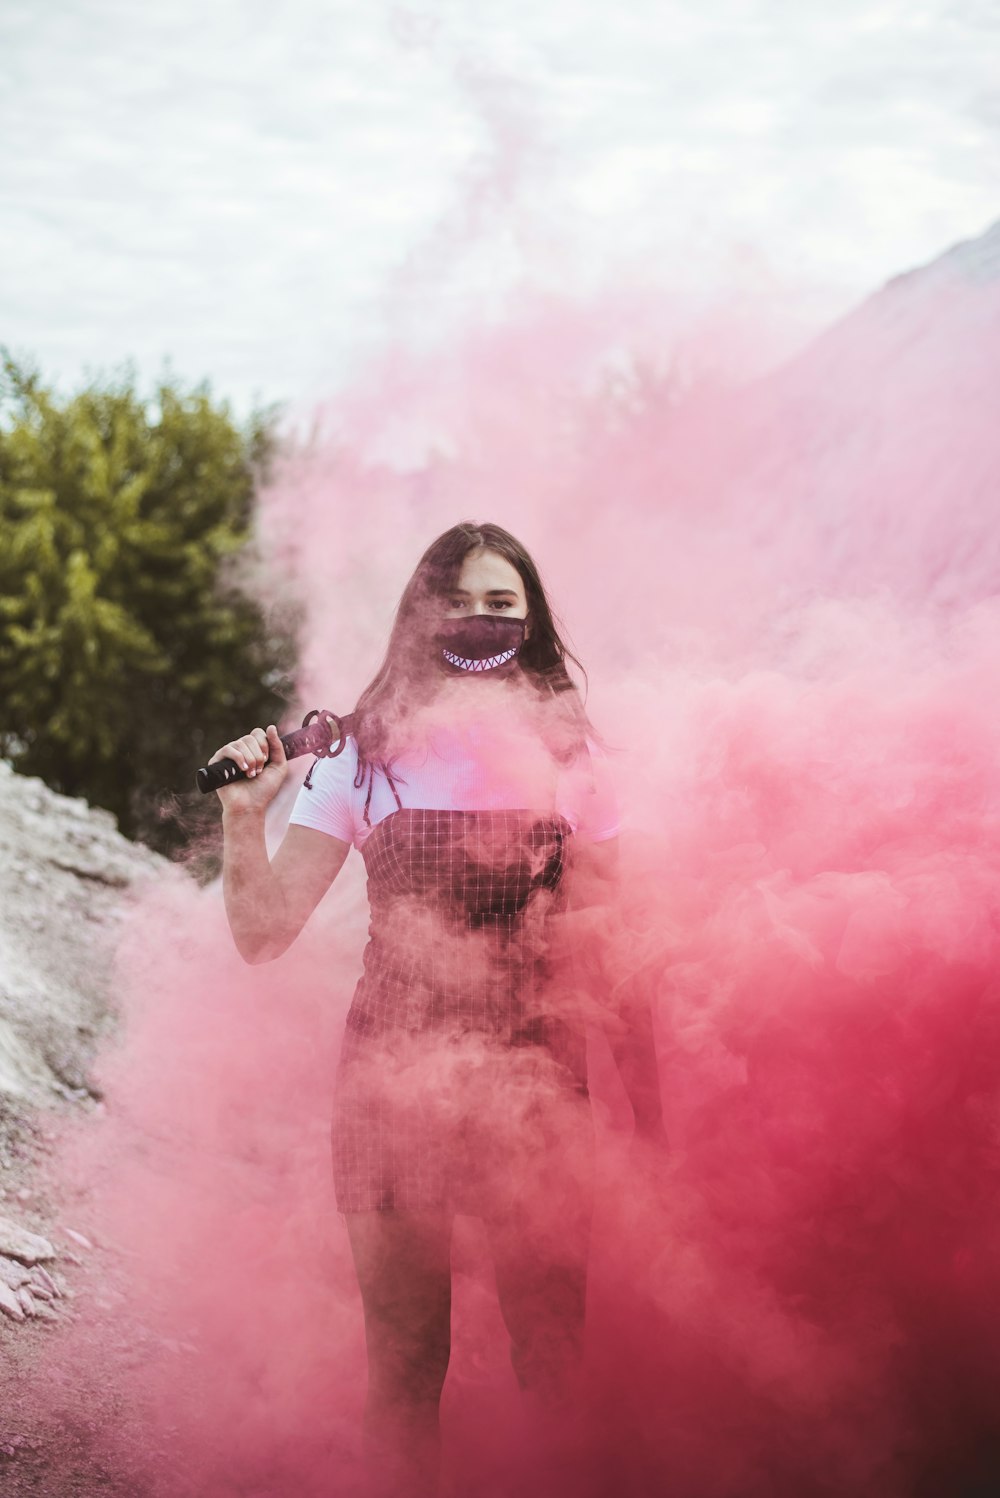 Femme en robe fleurie rouge et blanche debout sur la fumée rose